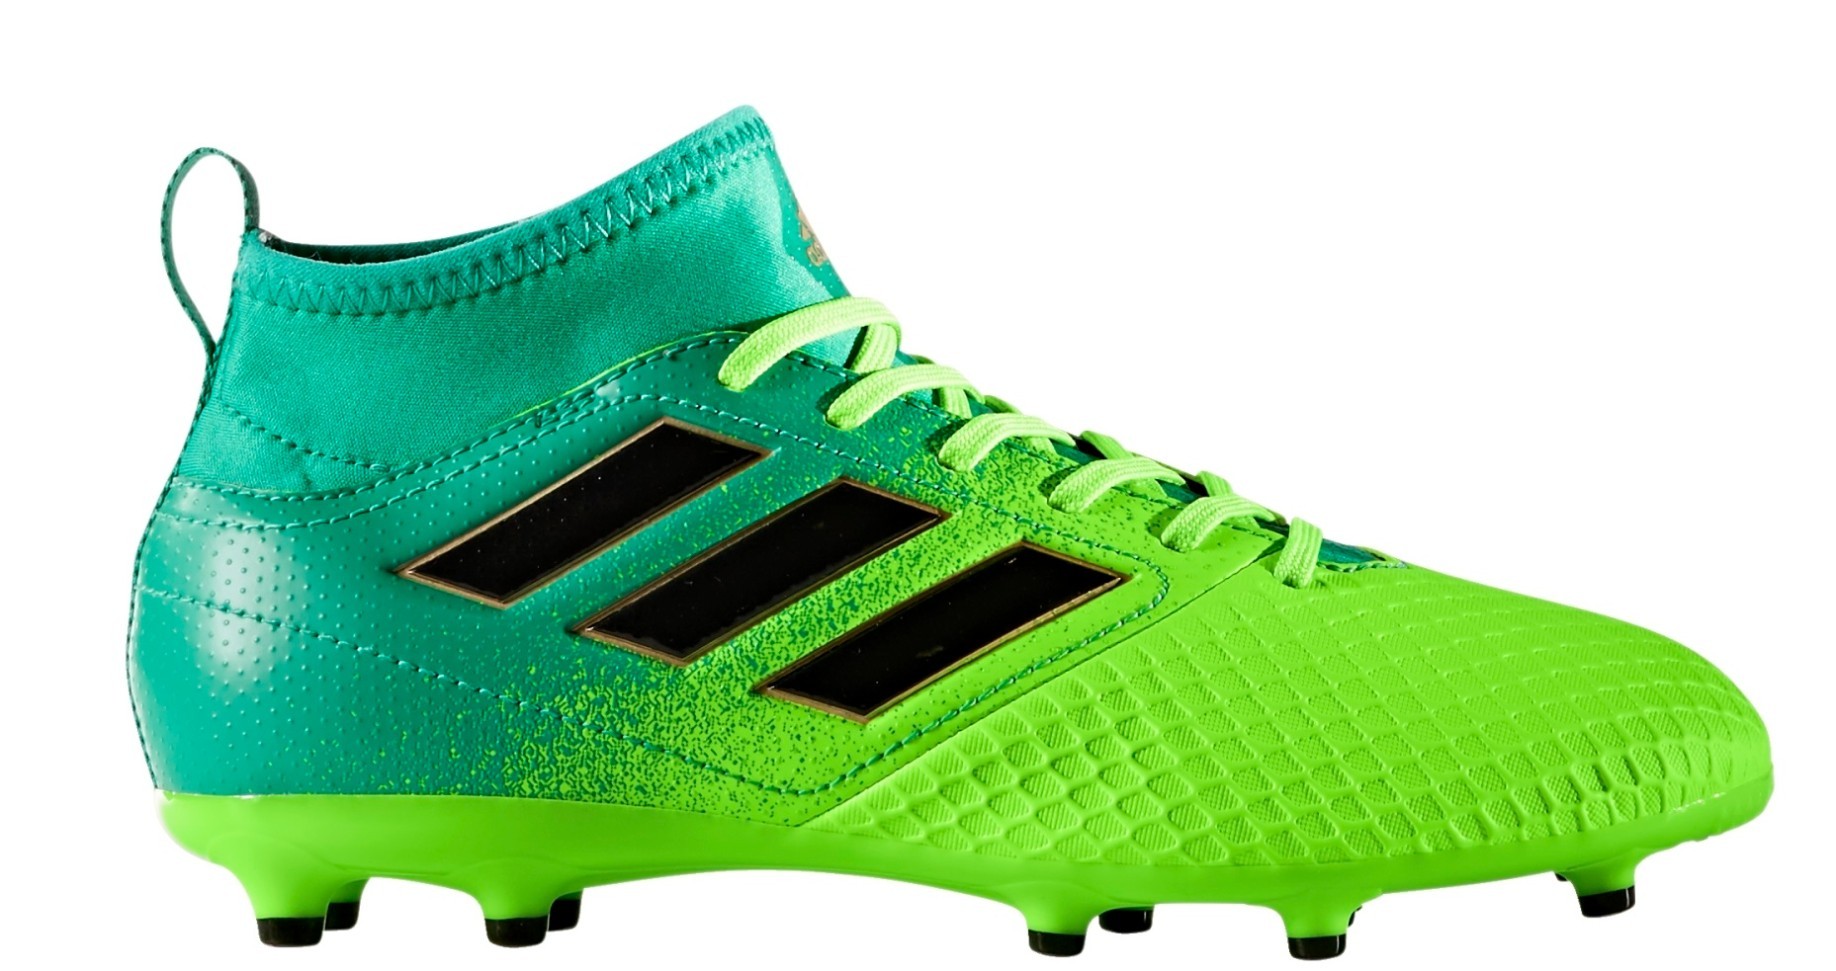 Botas fútbol Adidas Ace 17.3 FG Dispara colore verde - Adidas - SportIT.com